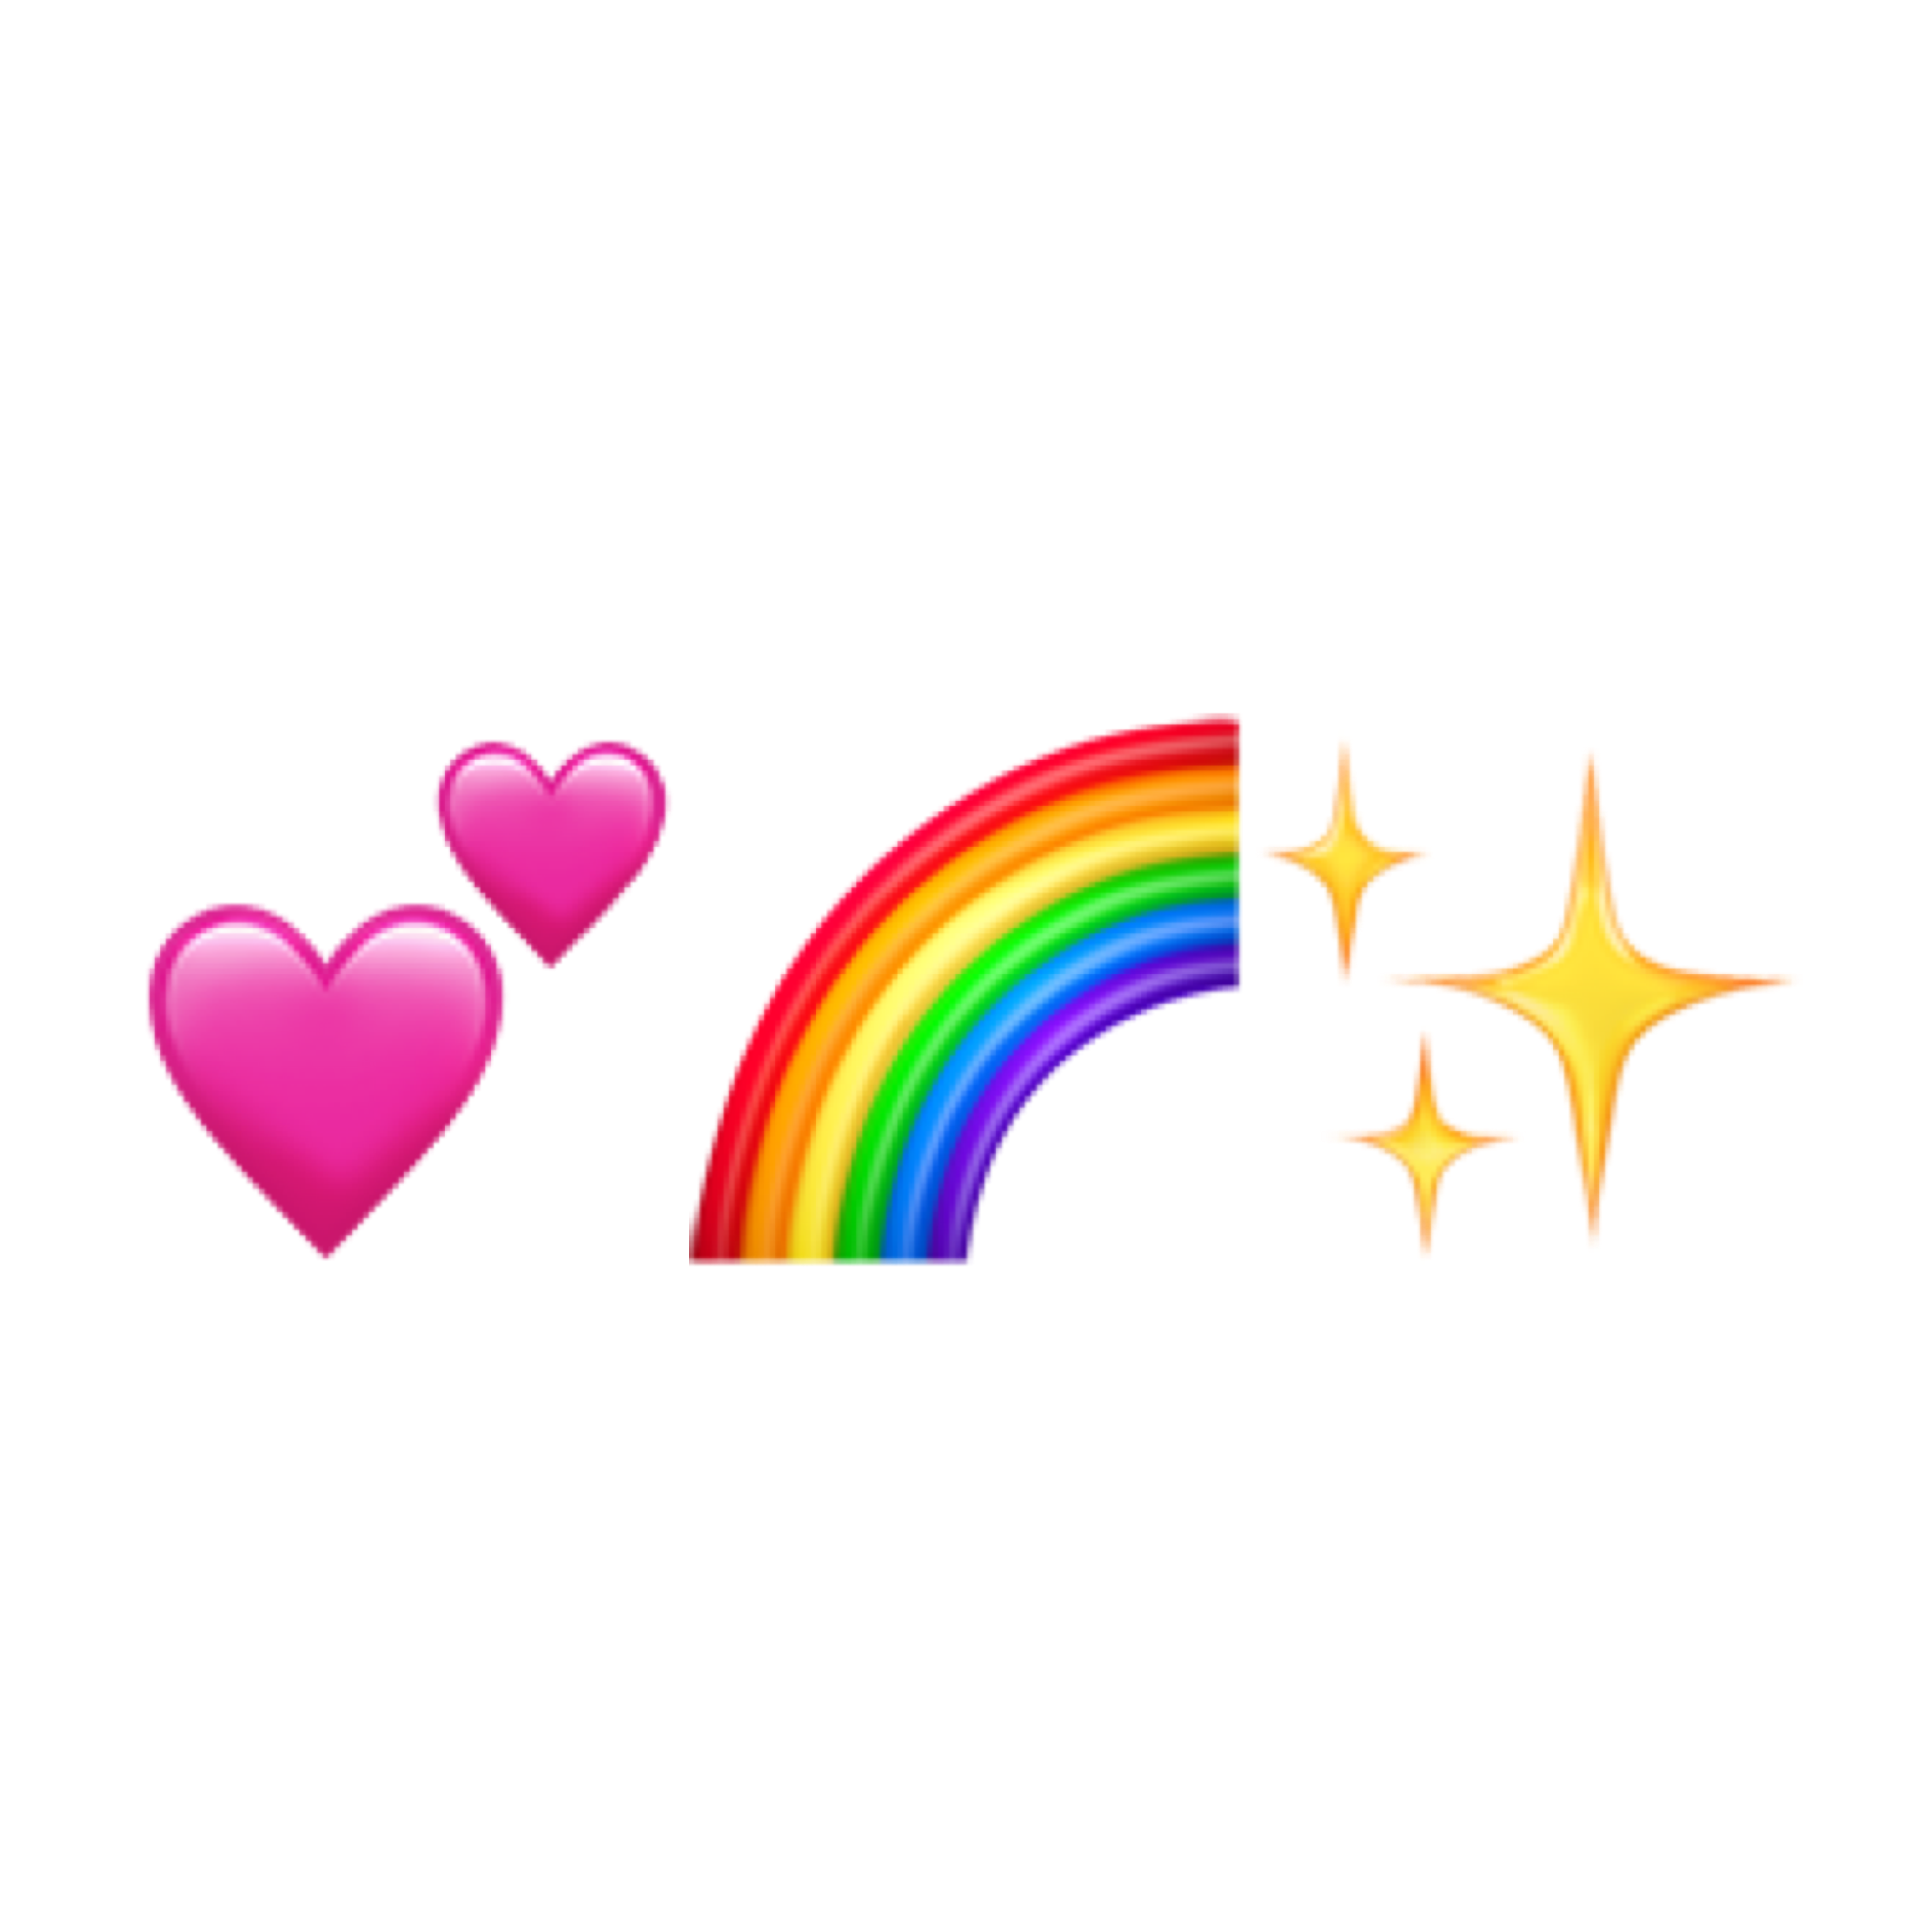 heart rainbow twinkle 하트 무지개 sticker by @jangjw129.